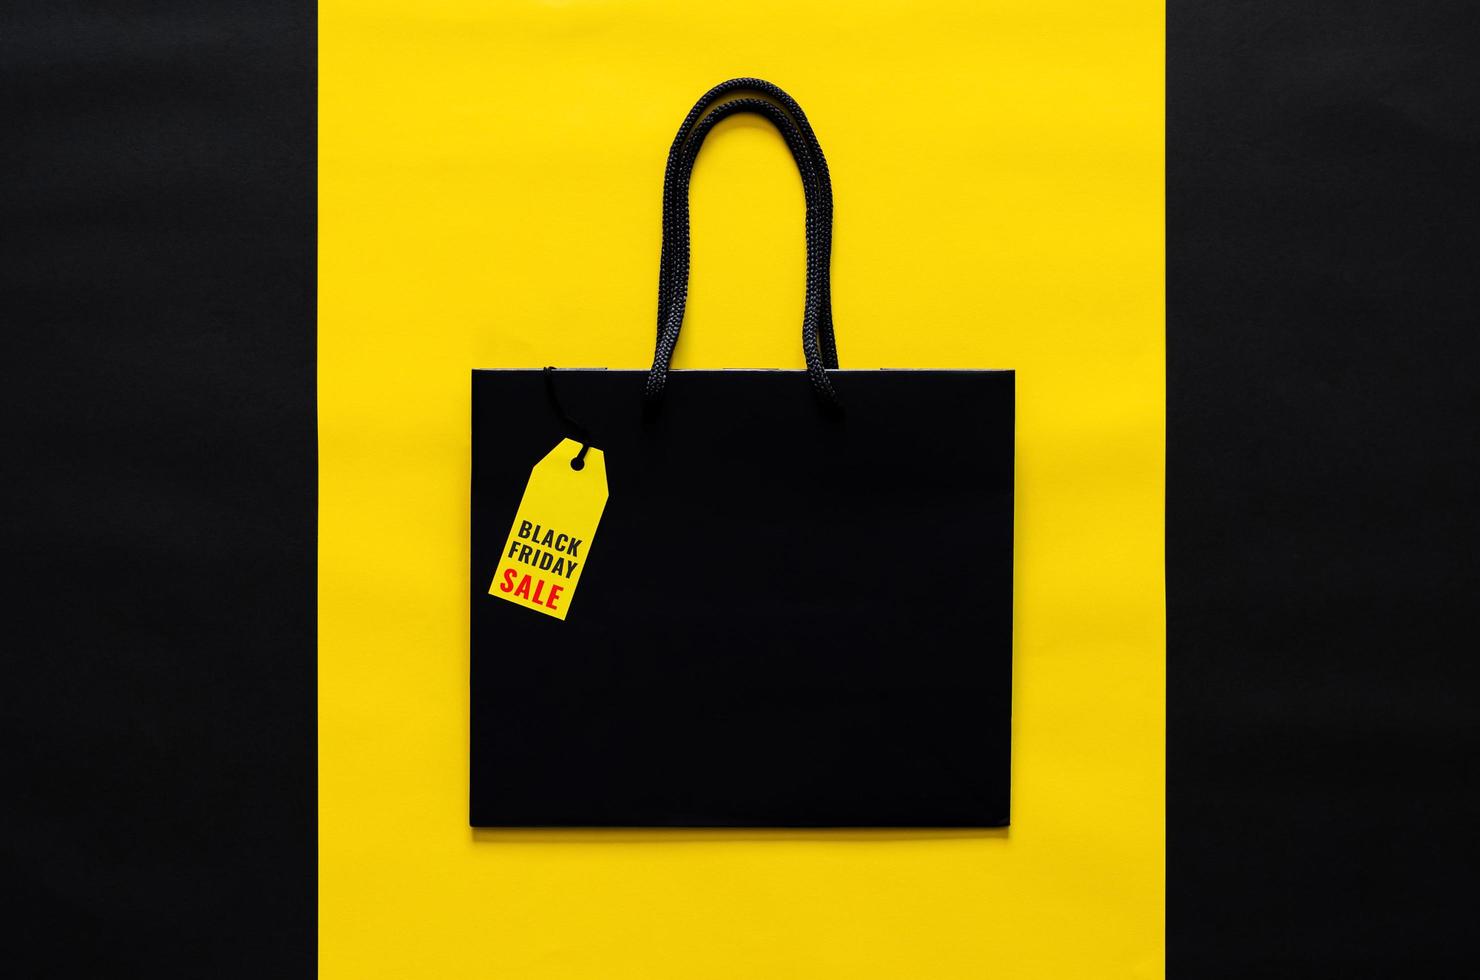 svart handla väska med gul pris märka på gul och svart bakgrund för svart fredag handla försäljning begrepp. foto